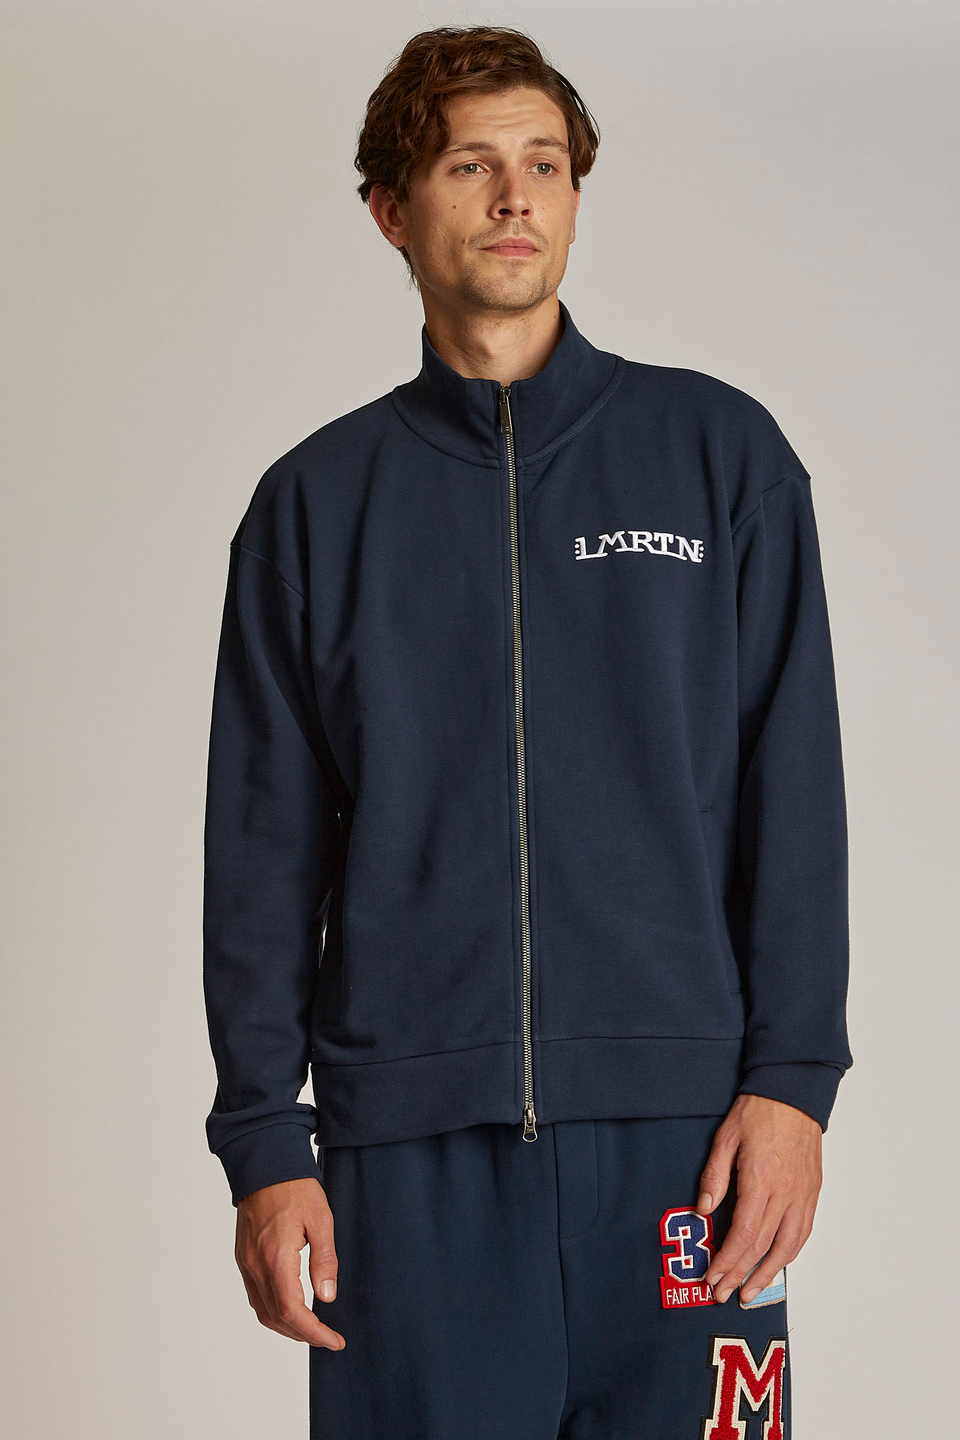 Herren-Sweatshirt aus 100 % Baumwolle mit Reißverschluss, oversized Modell | La Martina - Official Online Shop